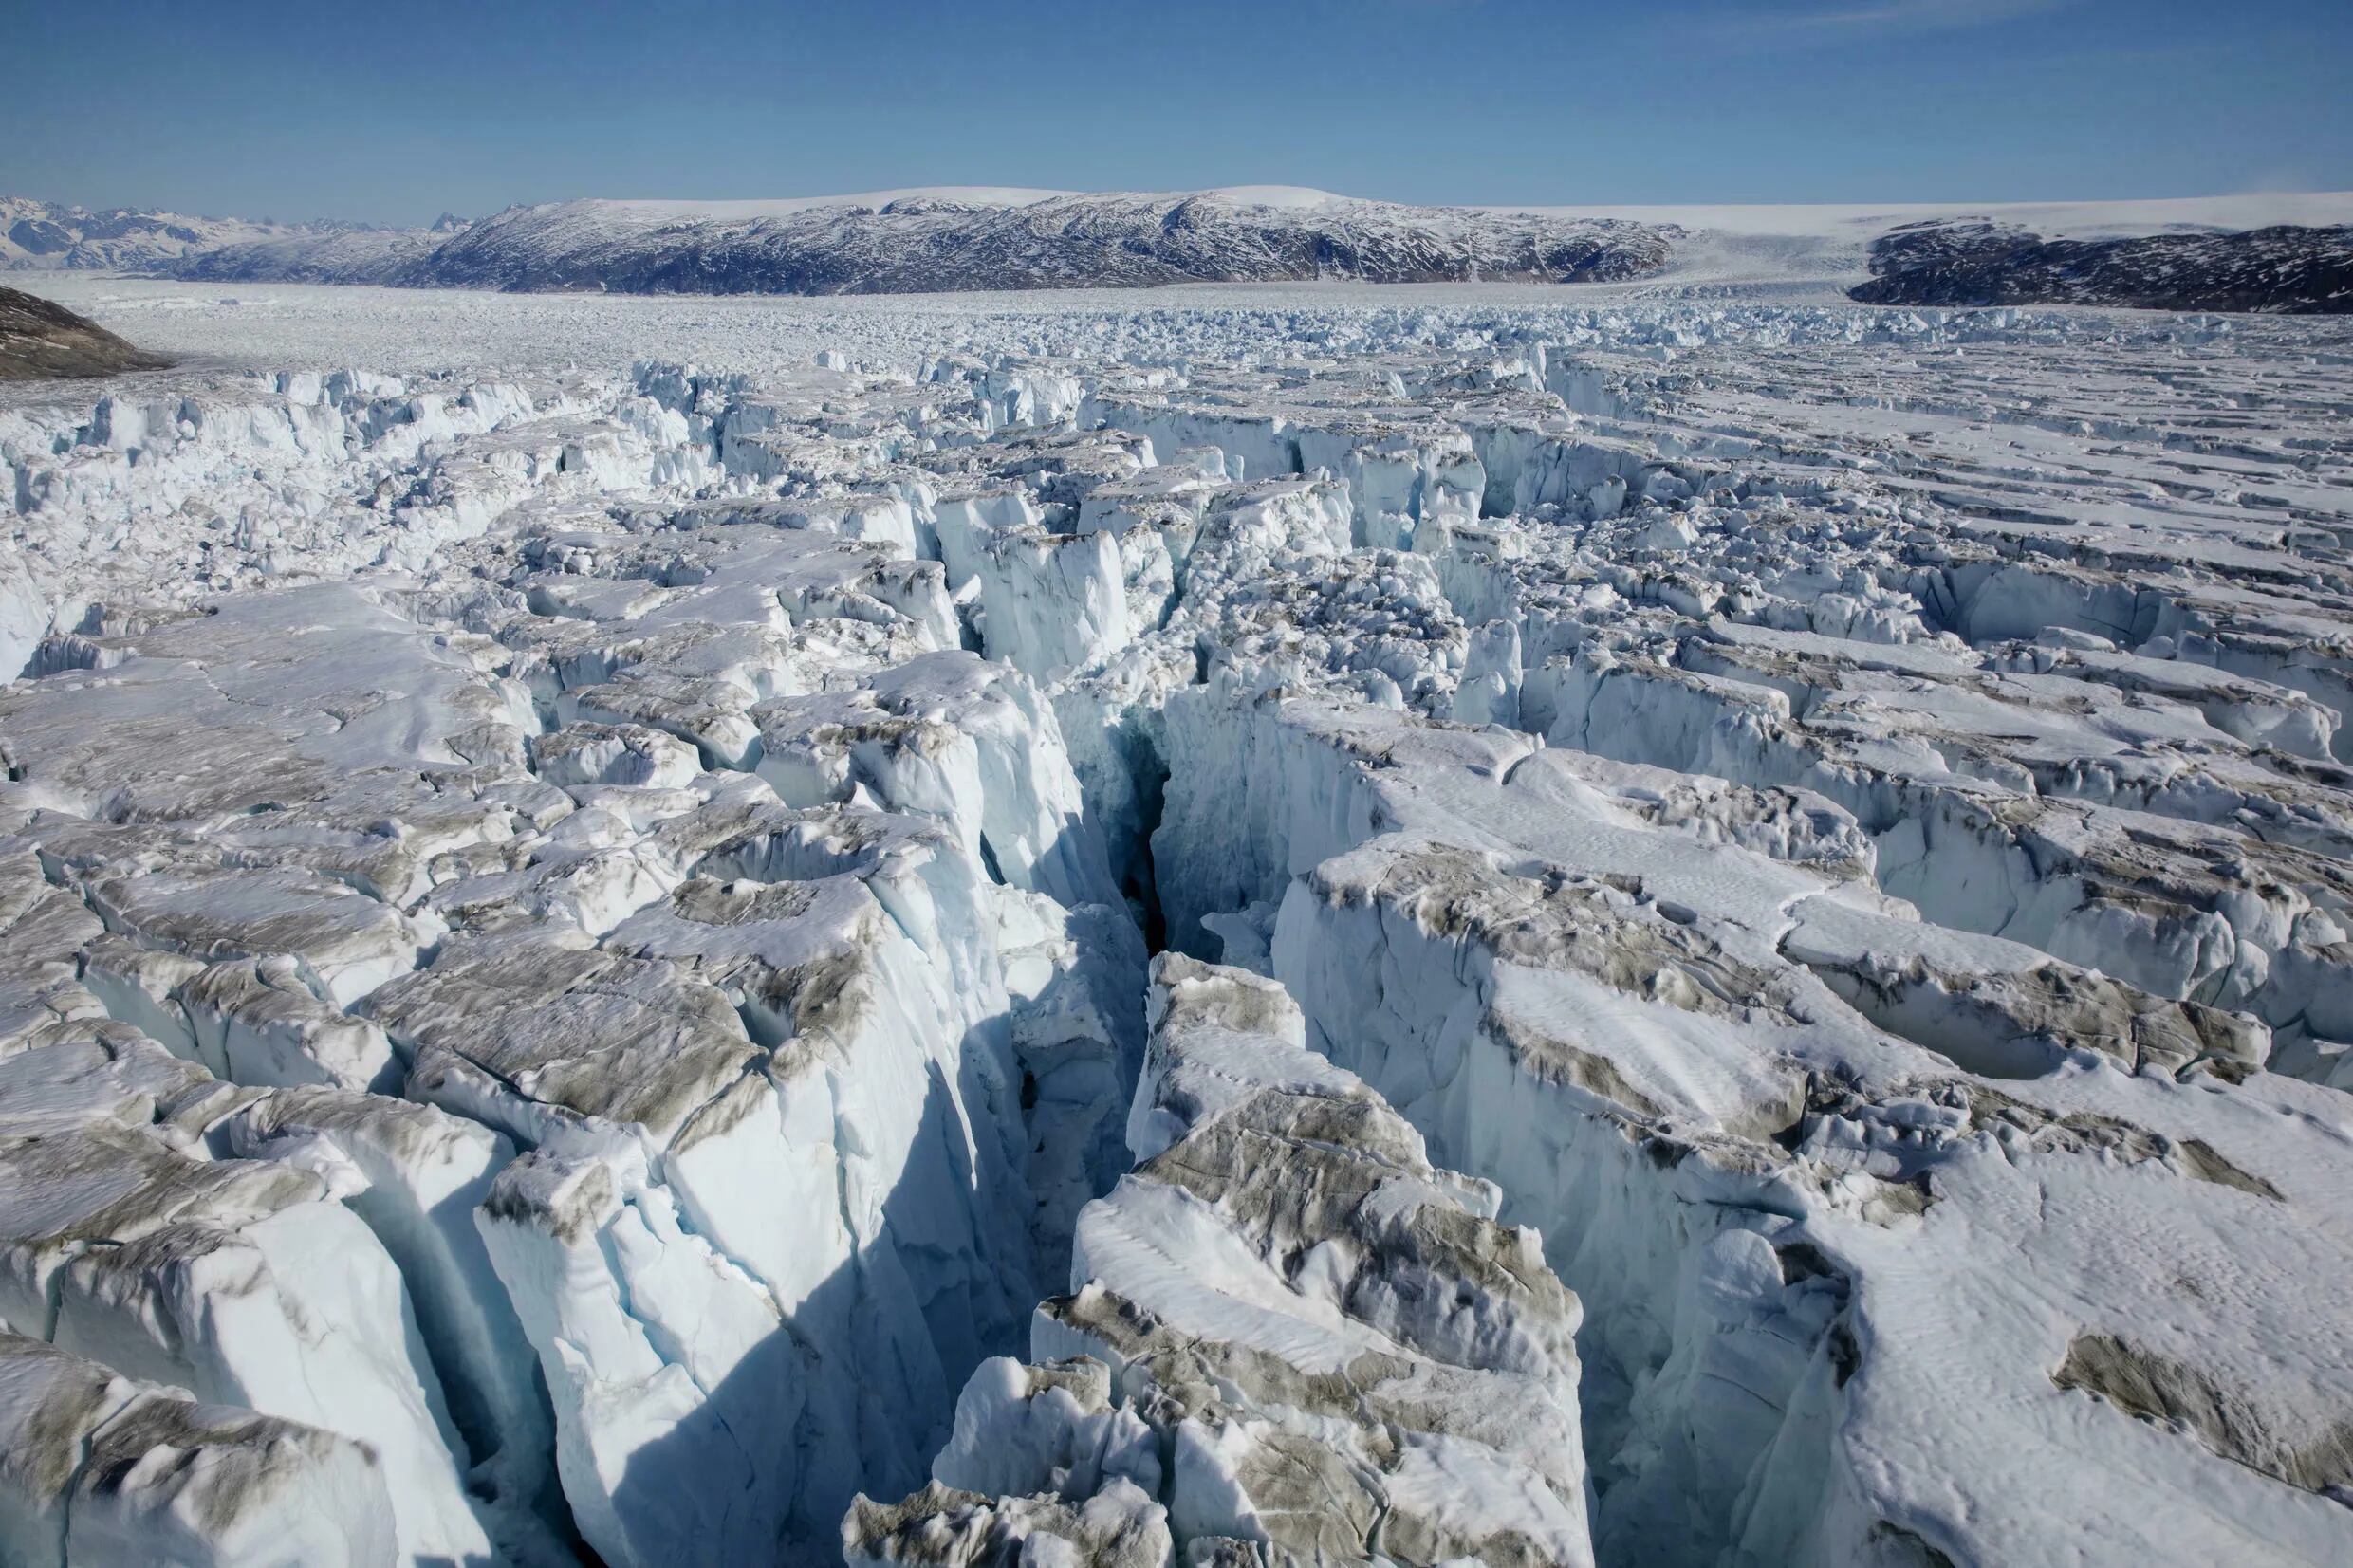 El informe de la Organización Meteorológica Mundial (OMM) alerta también sobre el derretimiento glacial que se agrava.